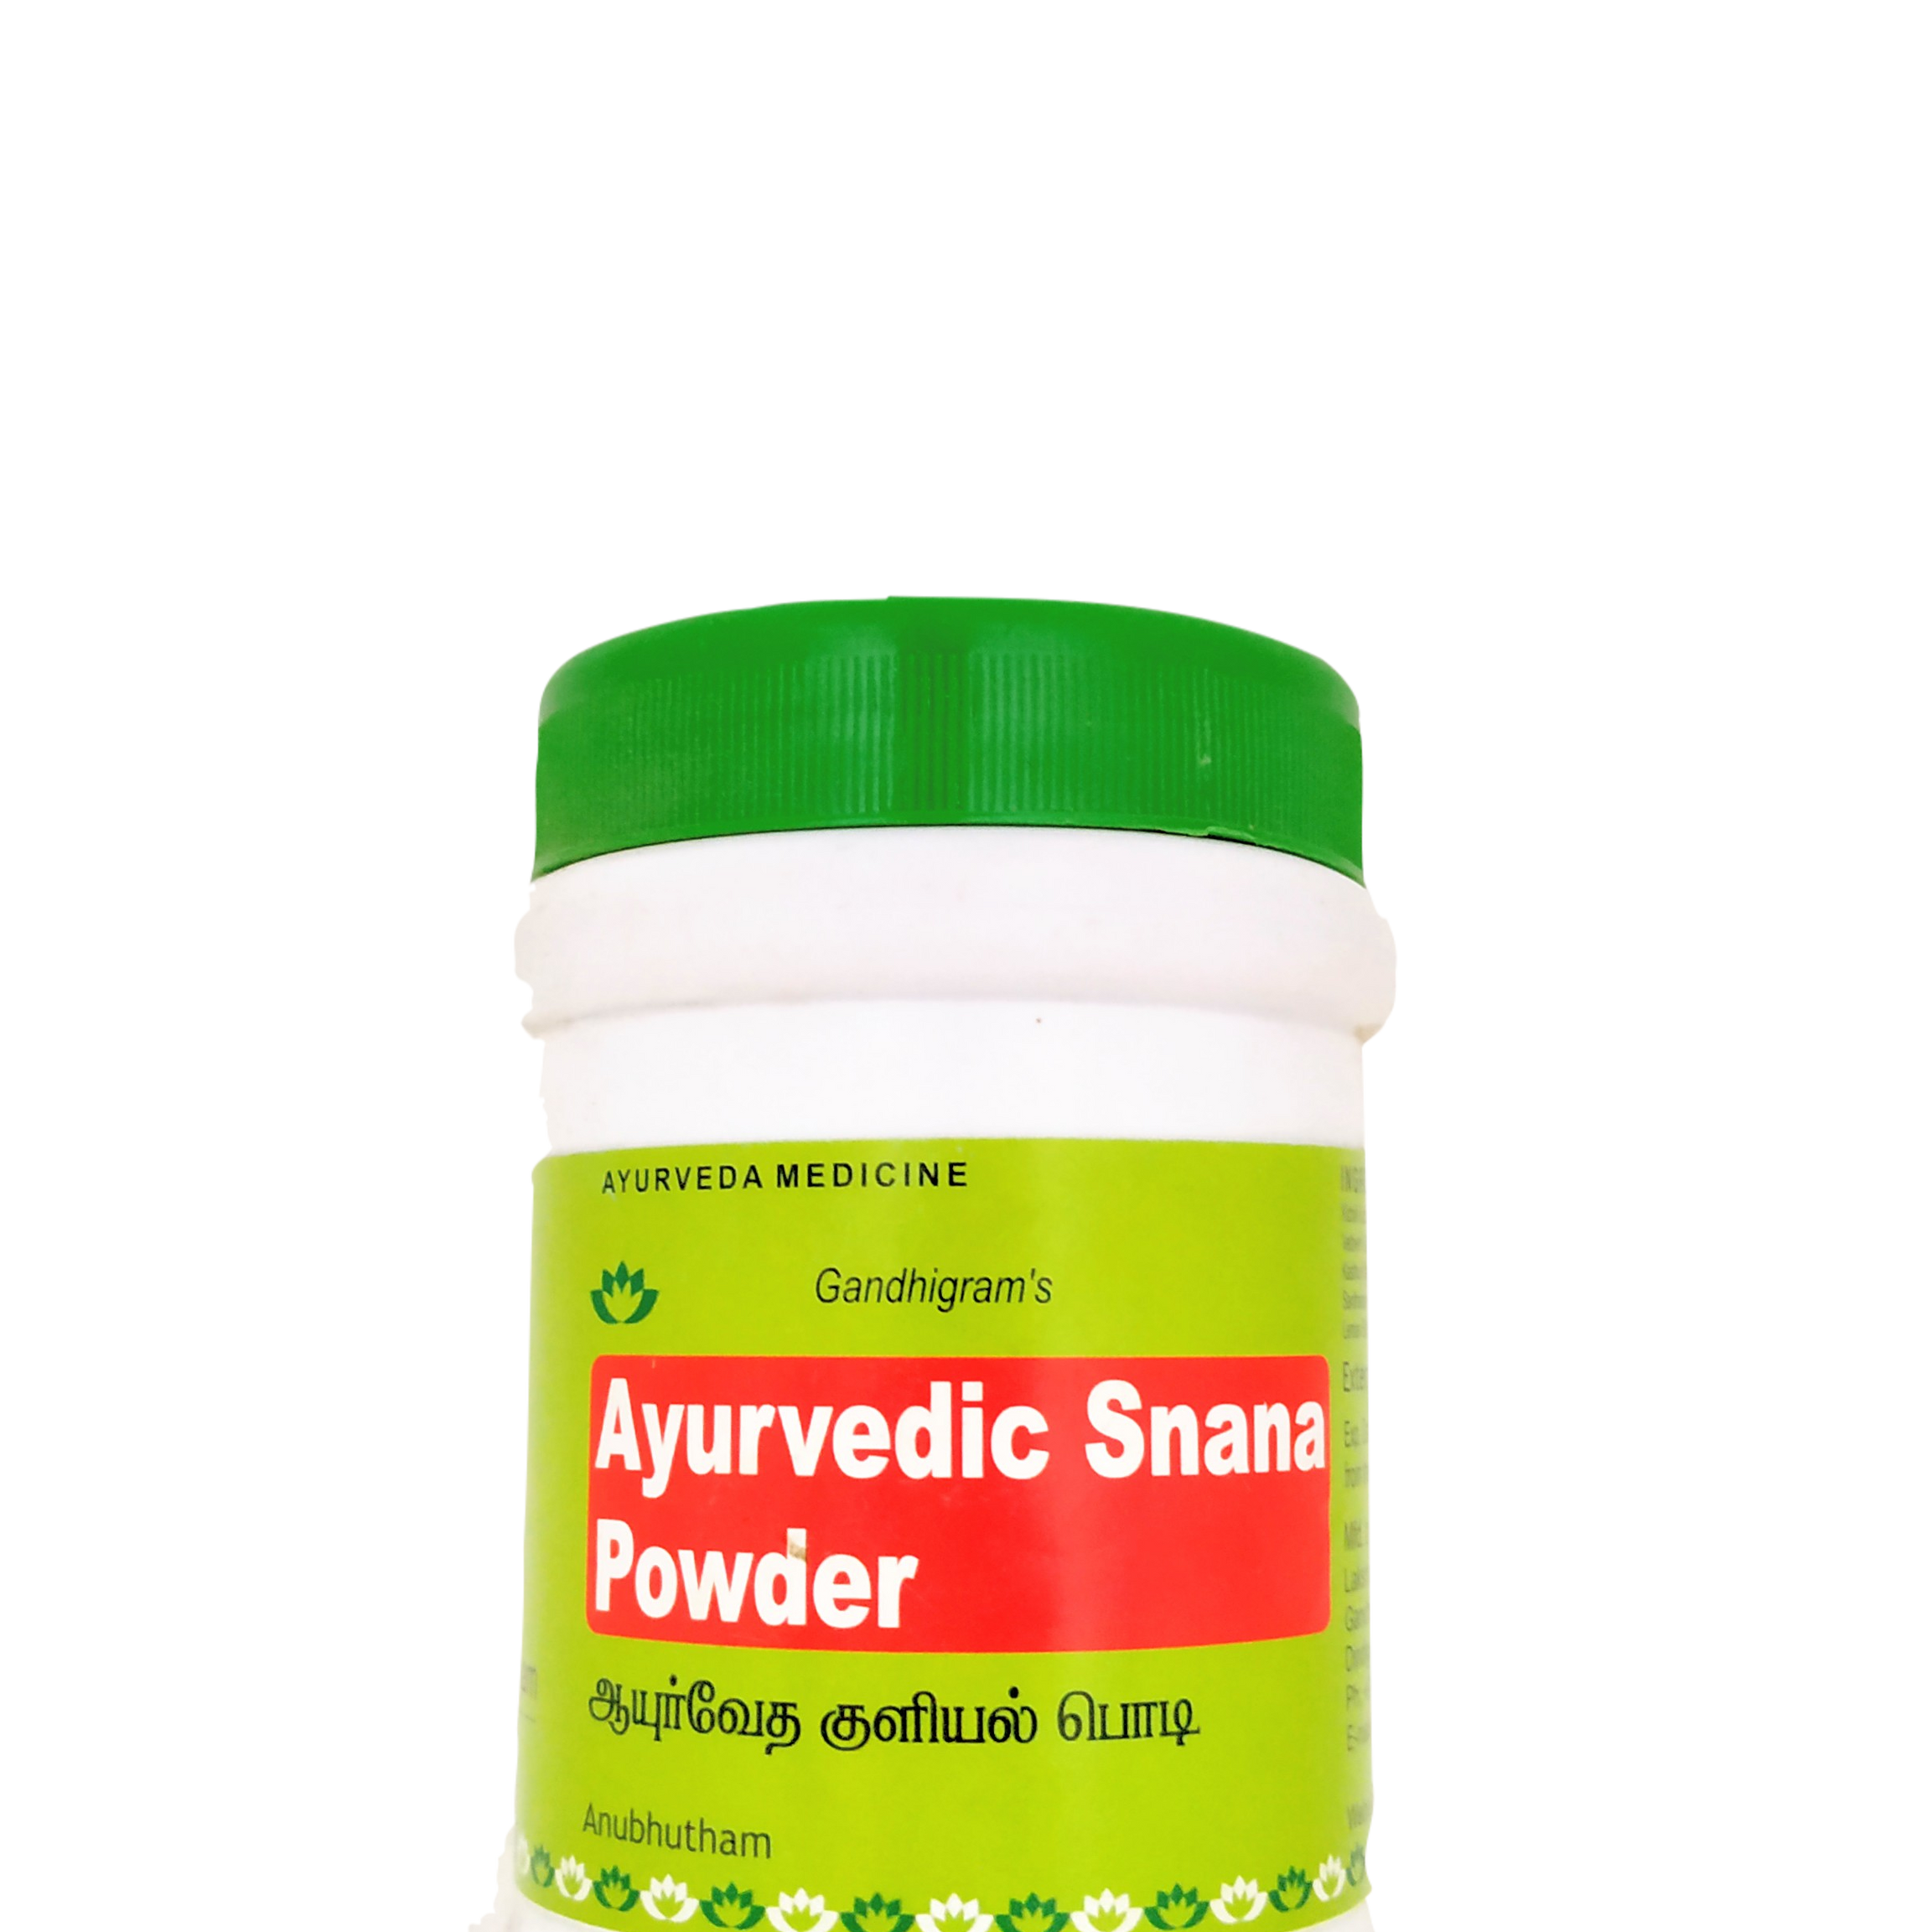 Shop Ayurvedic snana powder 100gm (bath powder) at price 95.00 from Lakshmi Seva Sangham Online - Ayush Care